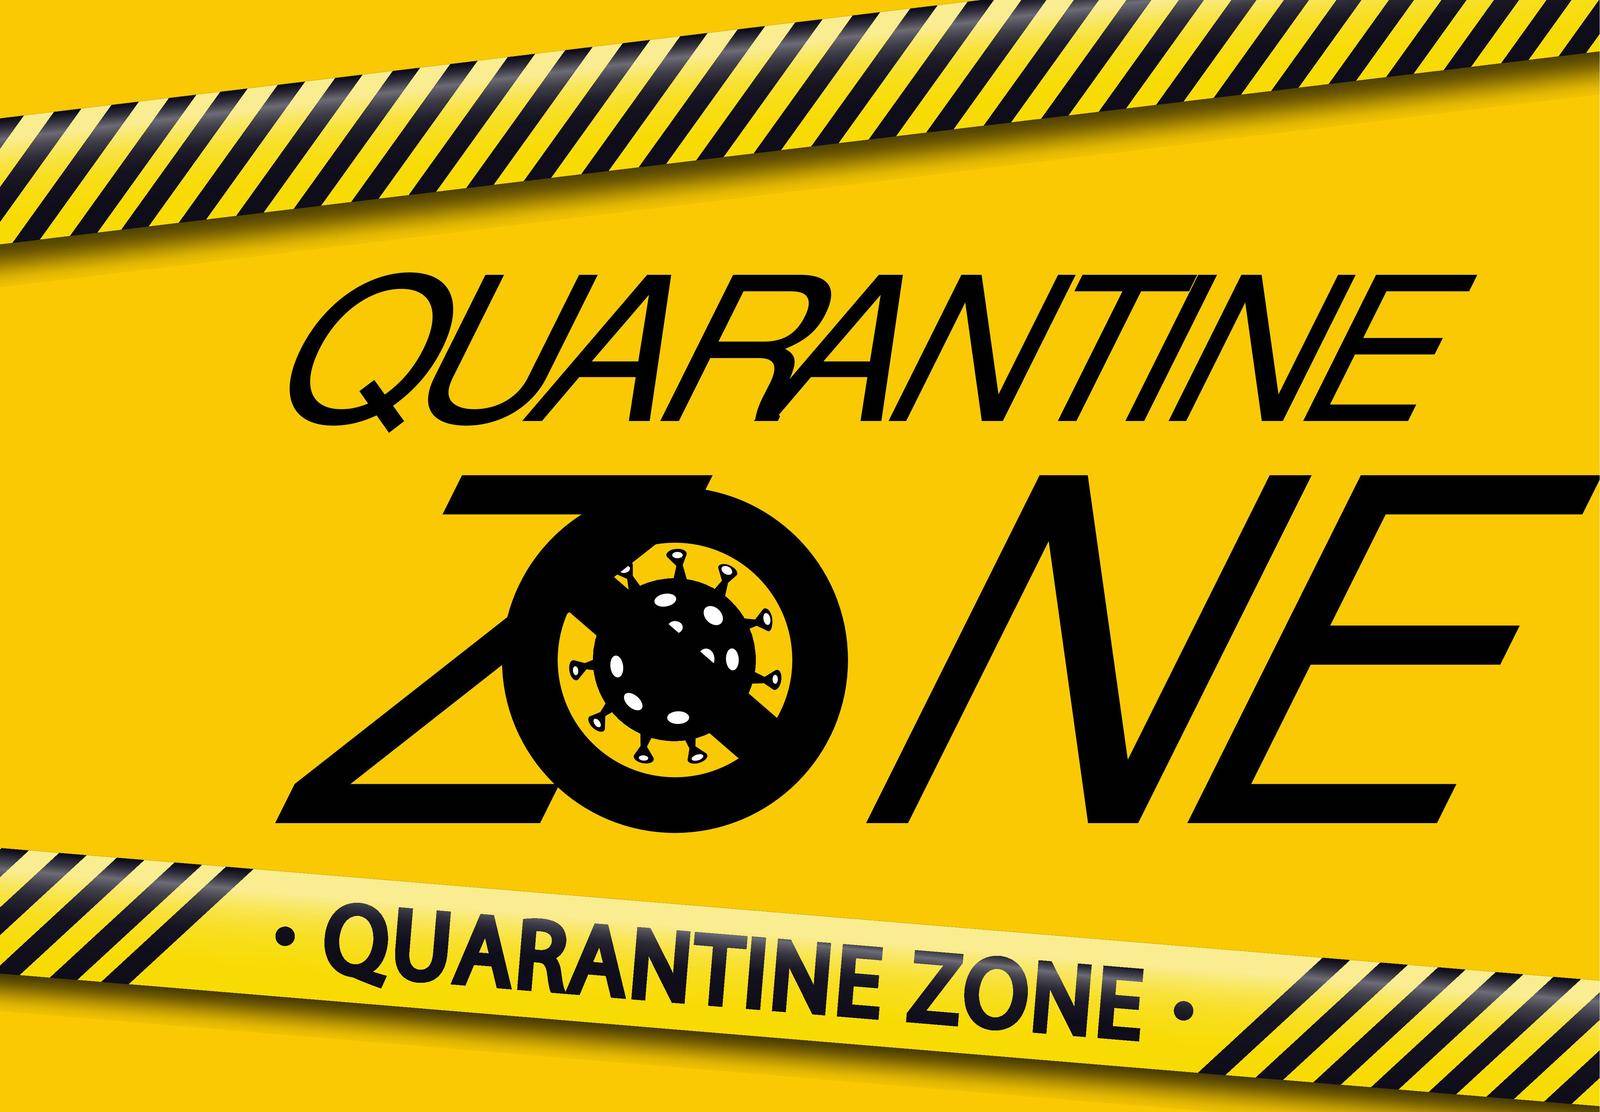 Quarantine Zone. Covid-19. Coronavirus.